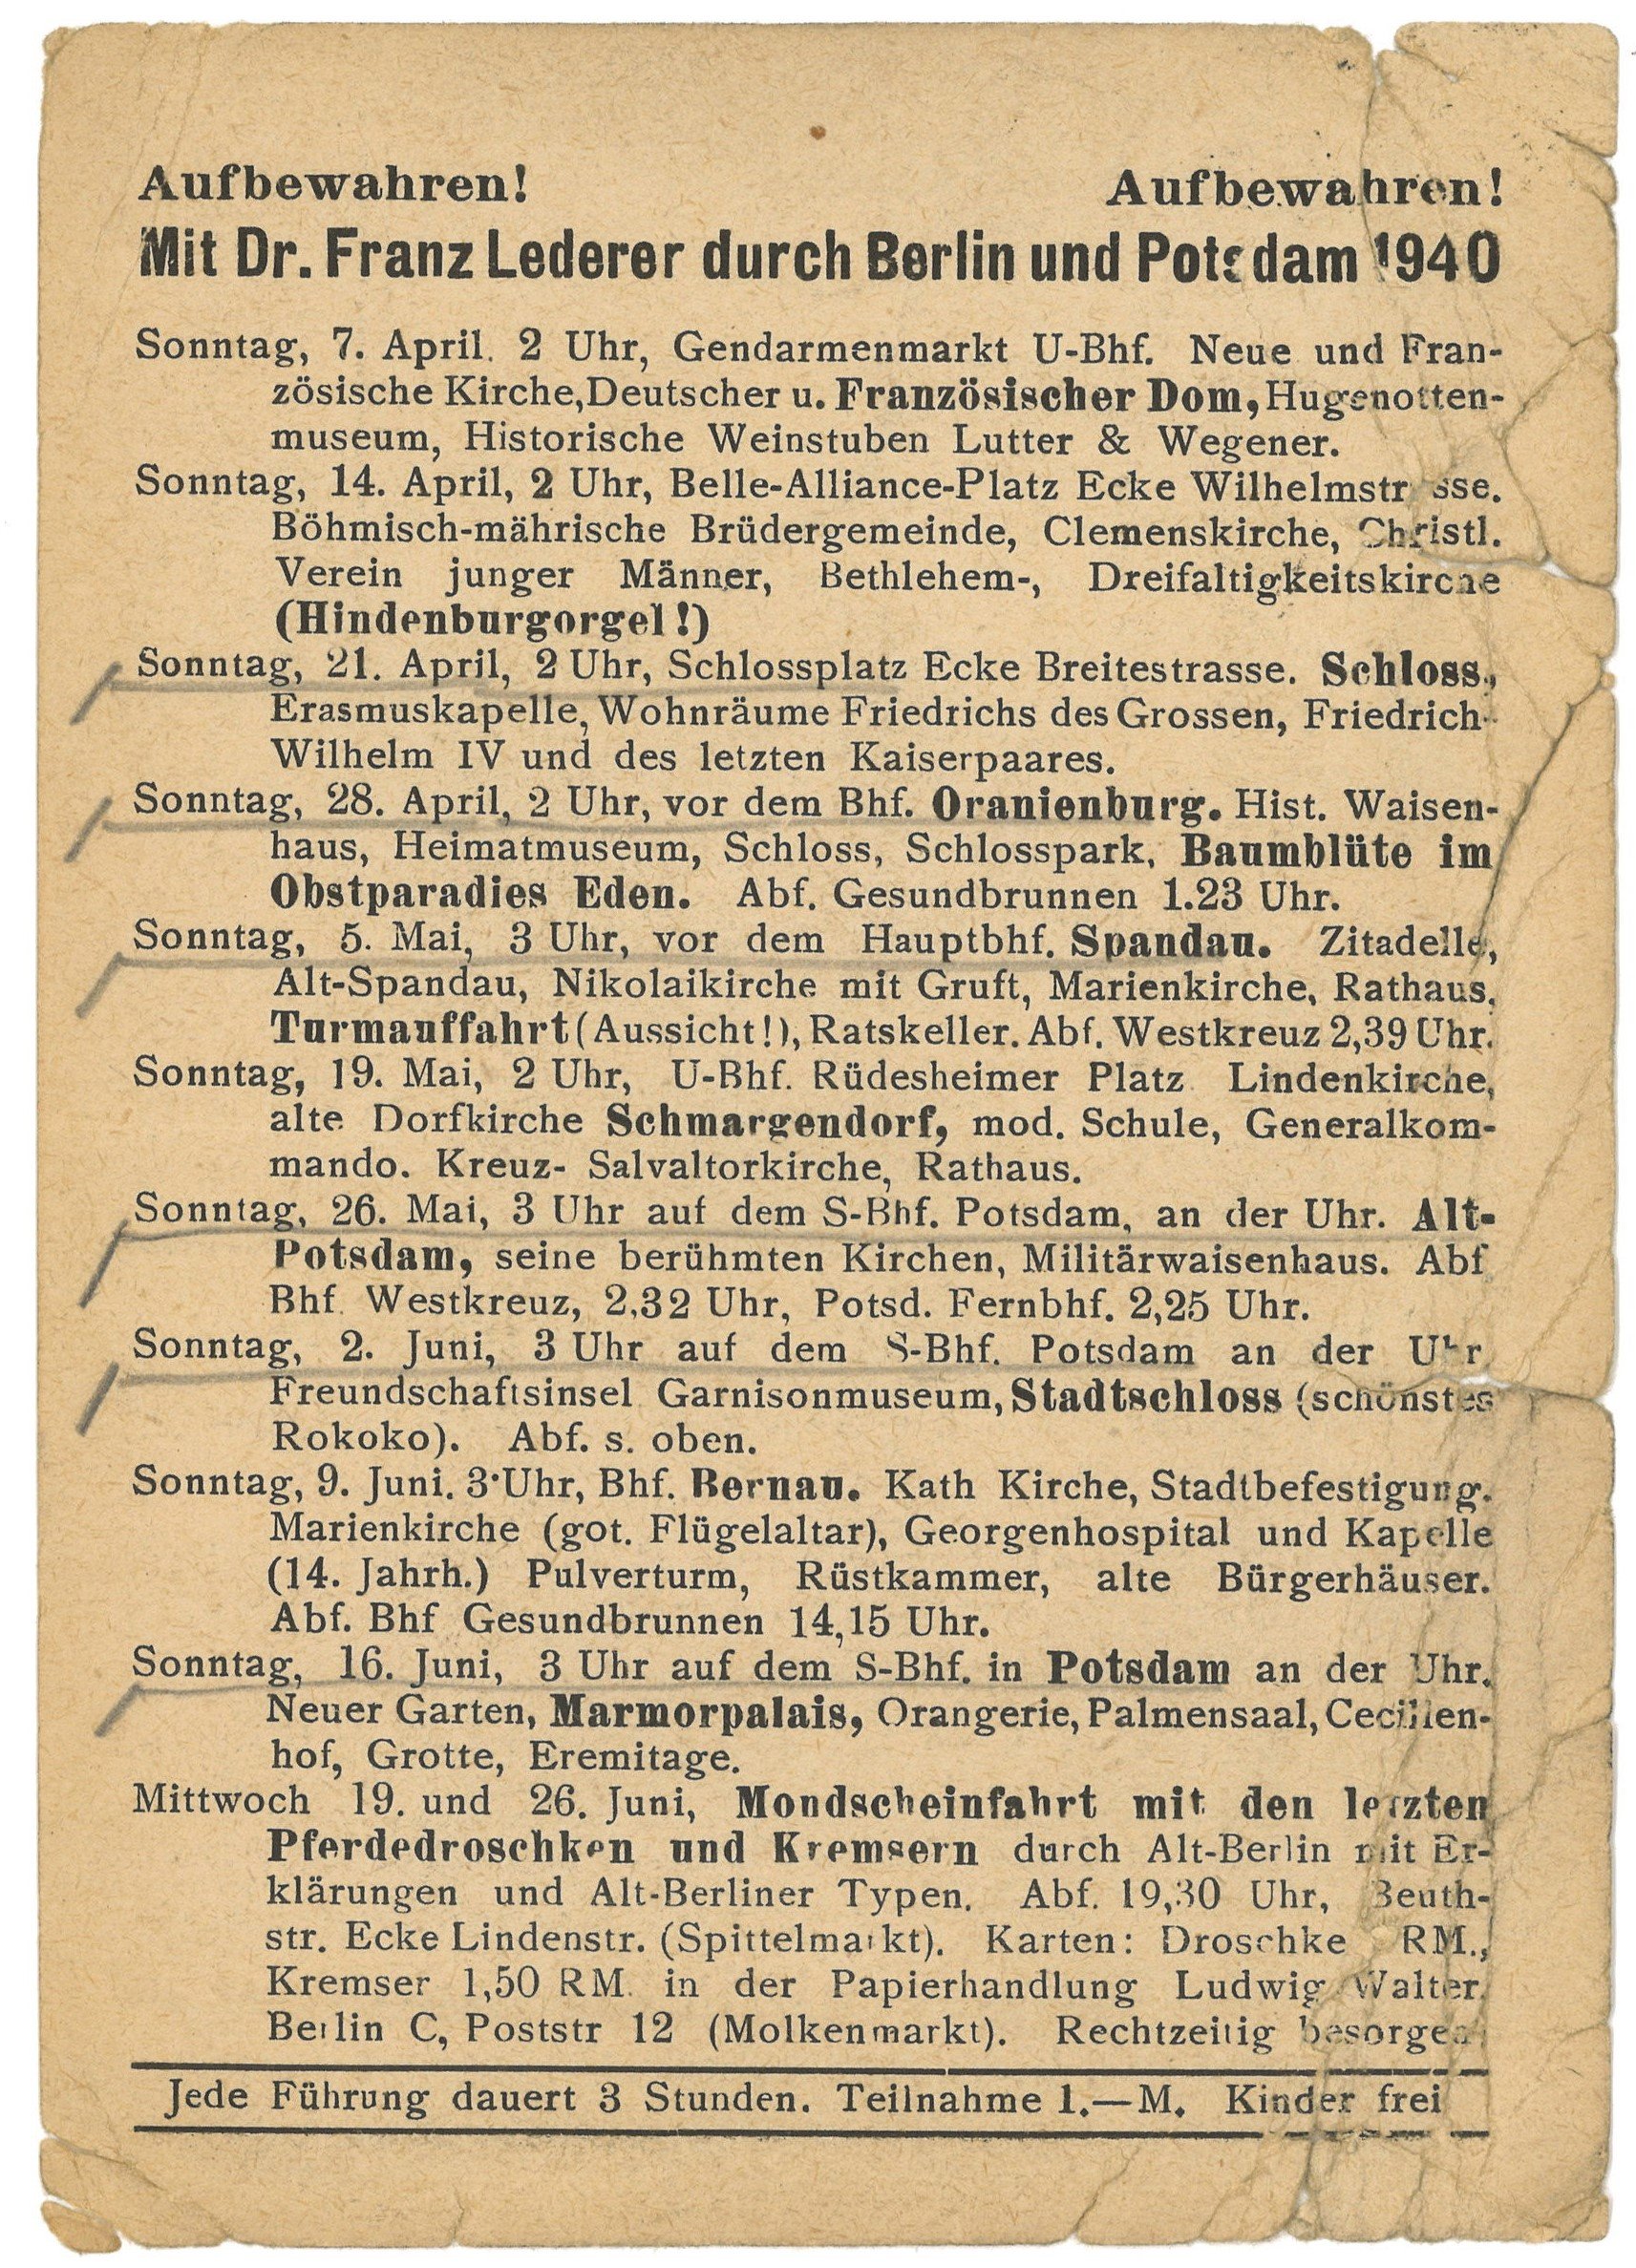 Programm der Berlin- und Potsdam-Führungen von Dr. Franz Lederer für April bis Juni 1940 (Landesgeschichtliche Vereinigung für die Mark Brandenburg e.V., Archiv CC BY)